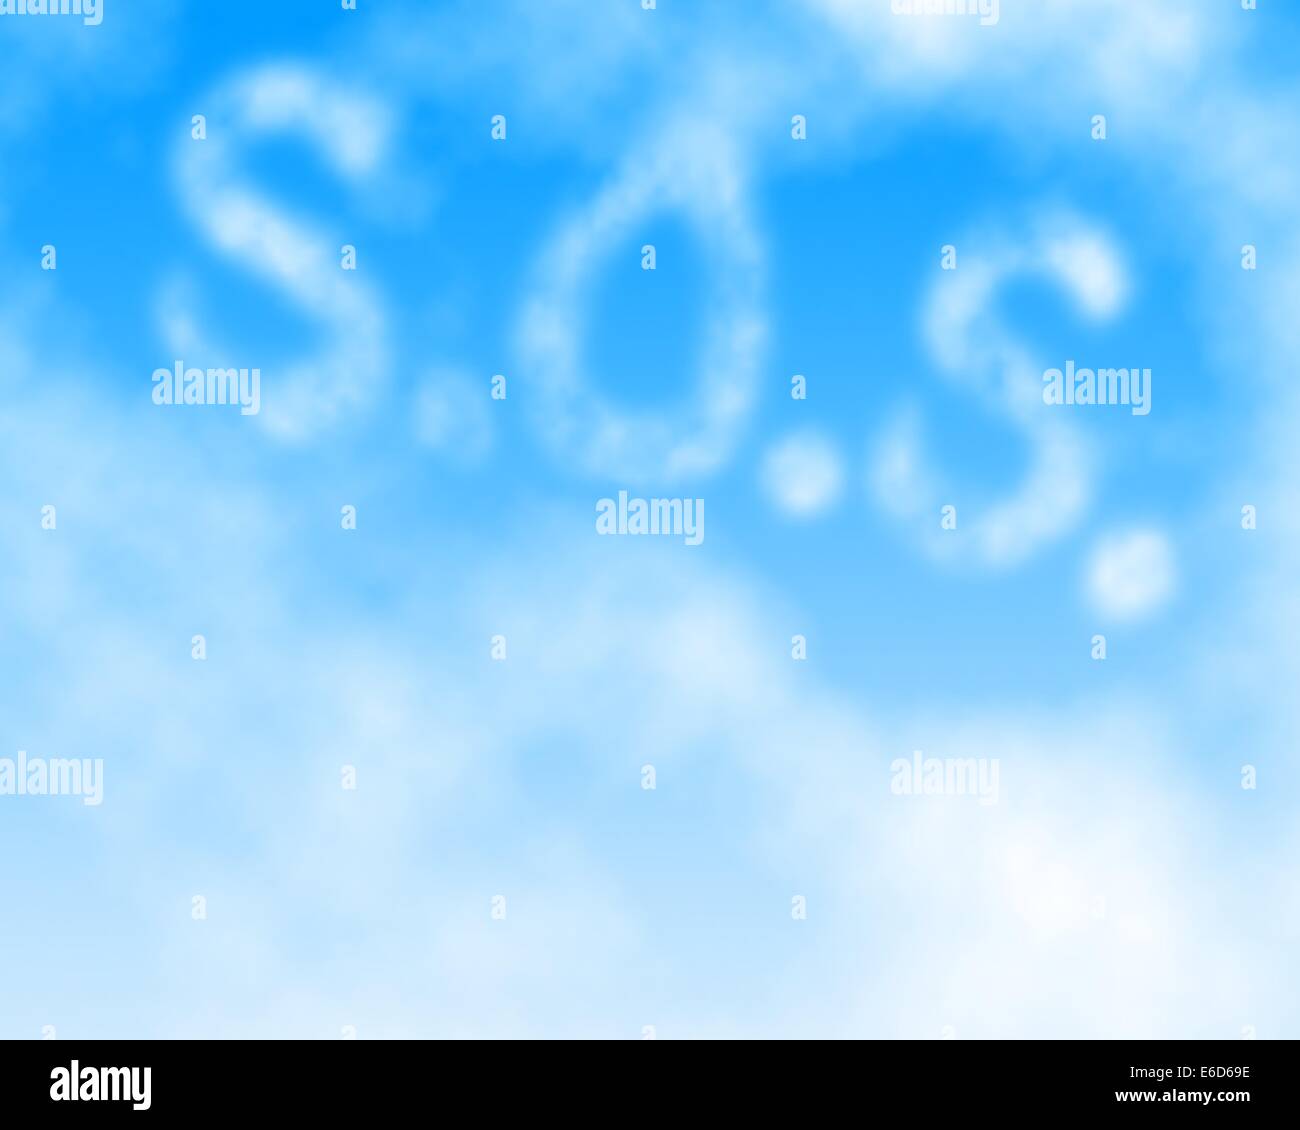 Bearbeitbares Vektor-Illustration eine SOS-Nachricht geschrieben am Himmel ein Verlaufsgitter hergestellt Stock Vektor